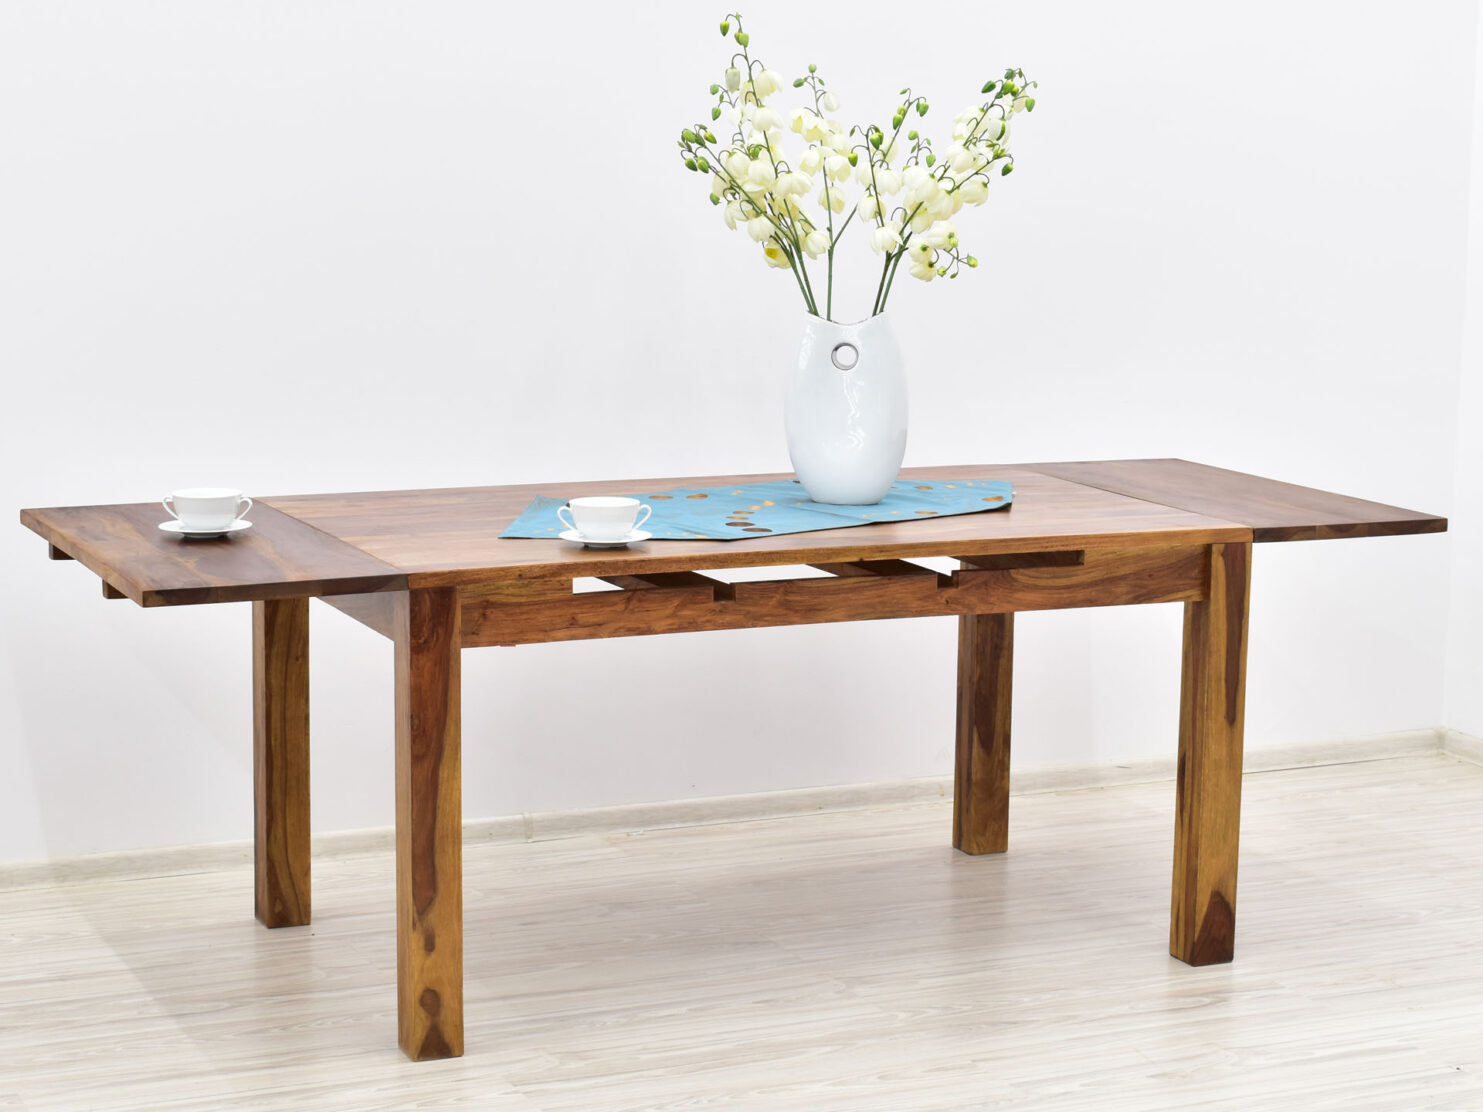 stol-kolonialny-lite-drewno-palisander-indyjski-rozkladany-jasny-braz-nowoczesny